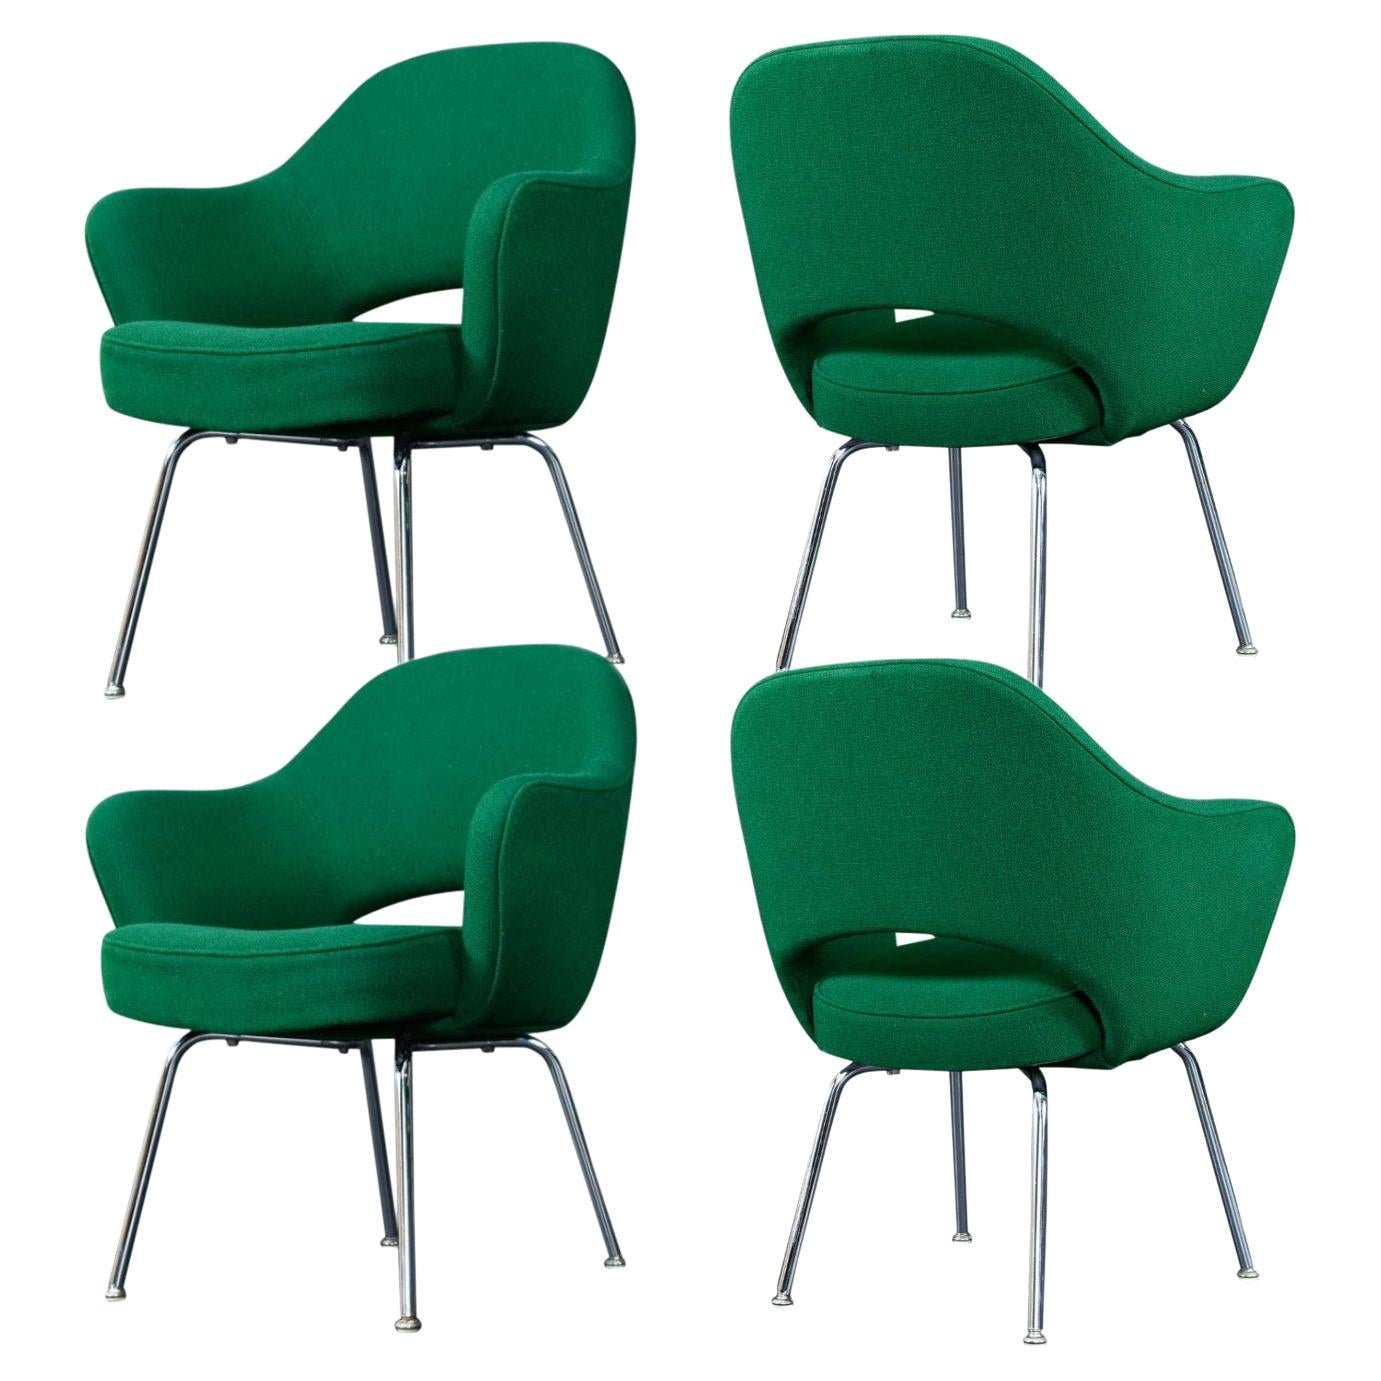 '4' Emerald Green Eero Saarinen for Knoll Executive Armchairs